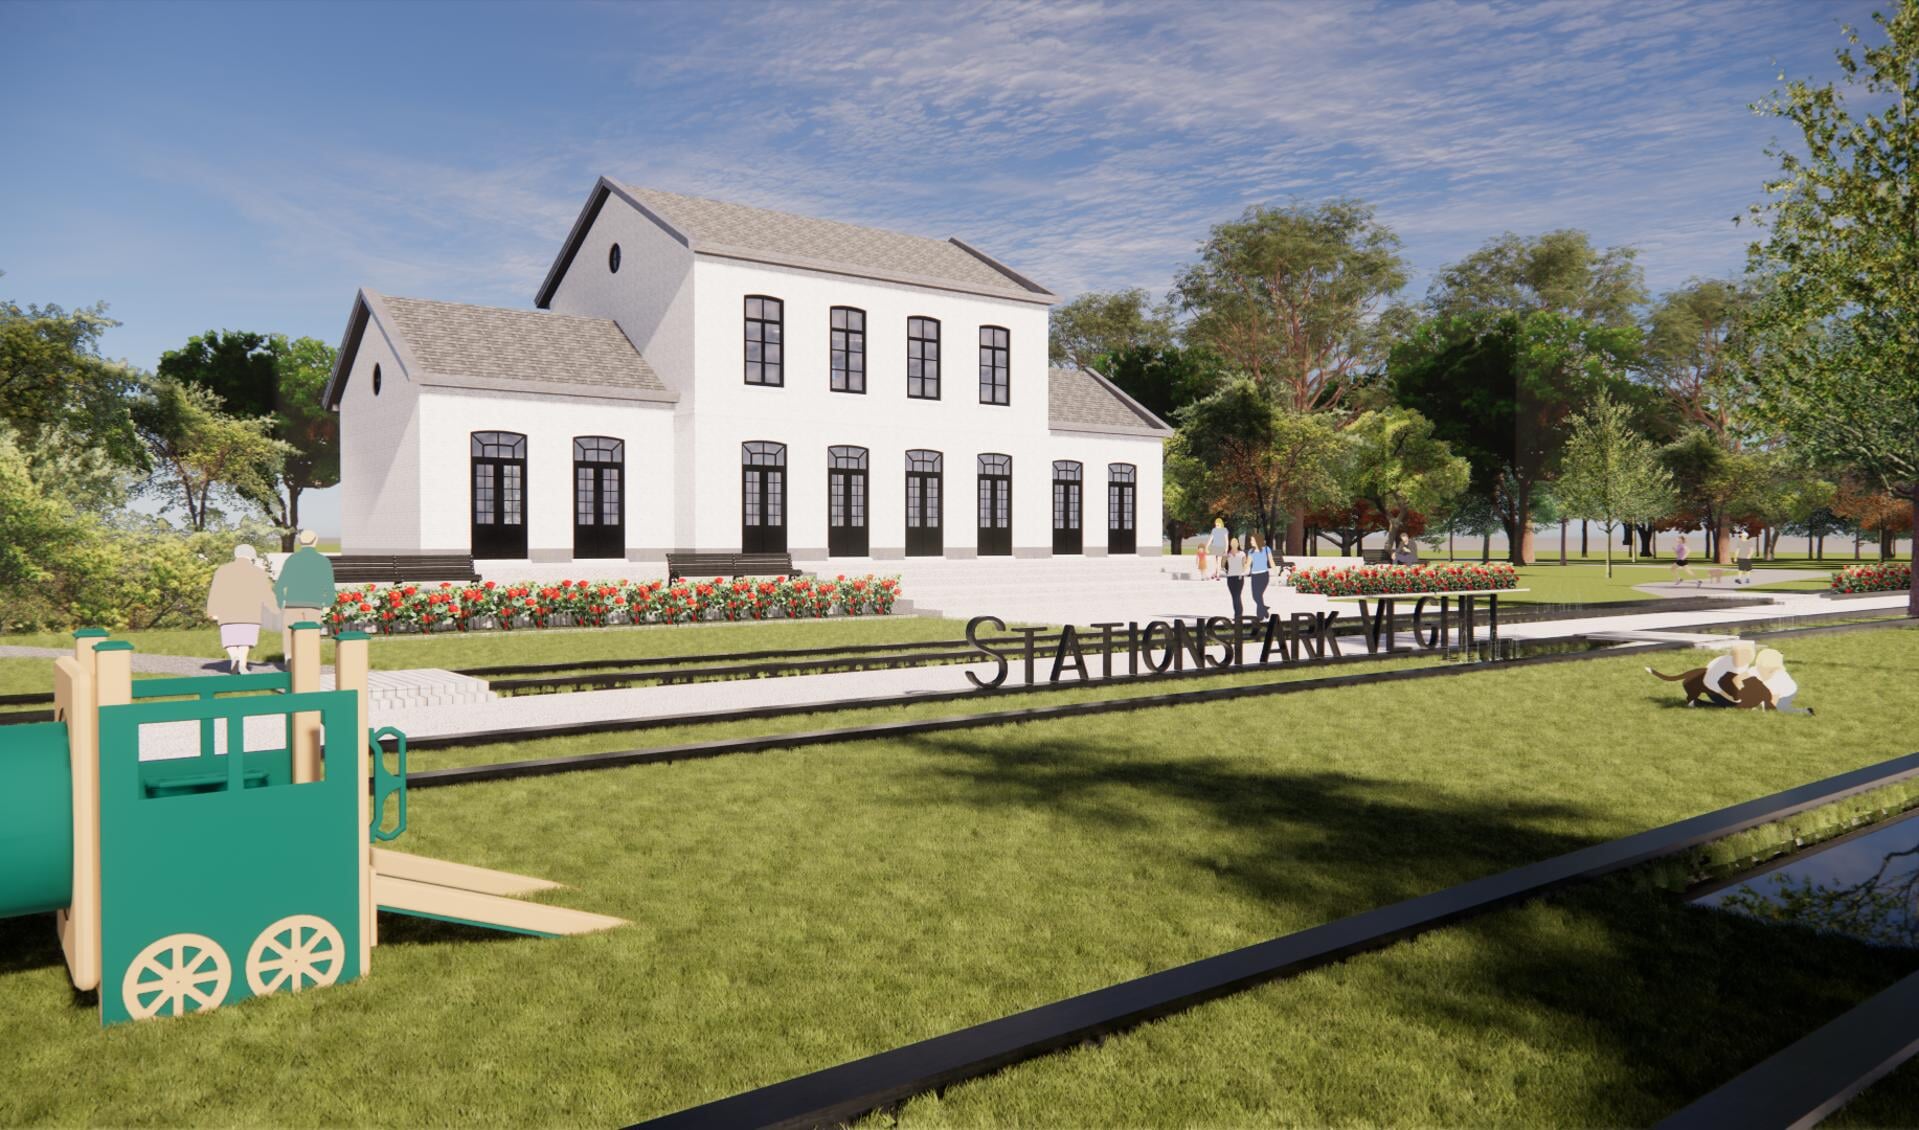 Ambitieus plan: de herbouw van het oude station in Veghel en Eerde en de ontwikkeling van het langste voedselbos van de wereld.